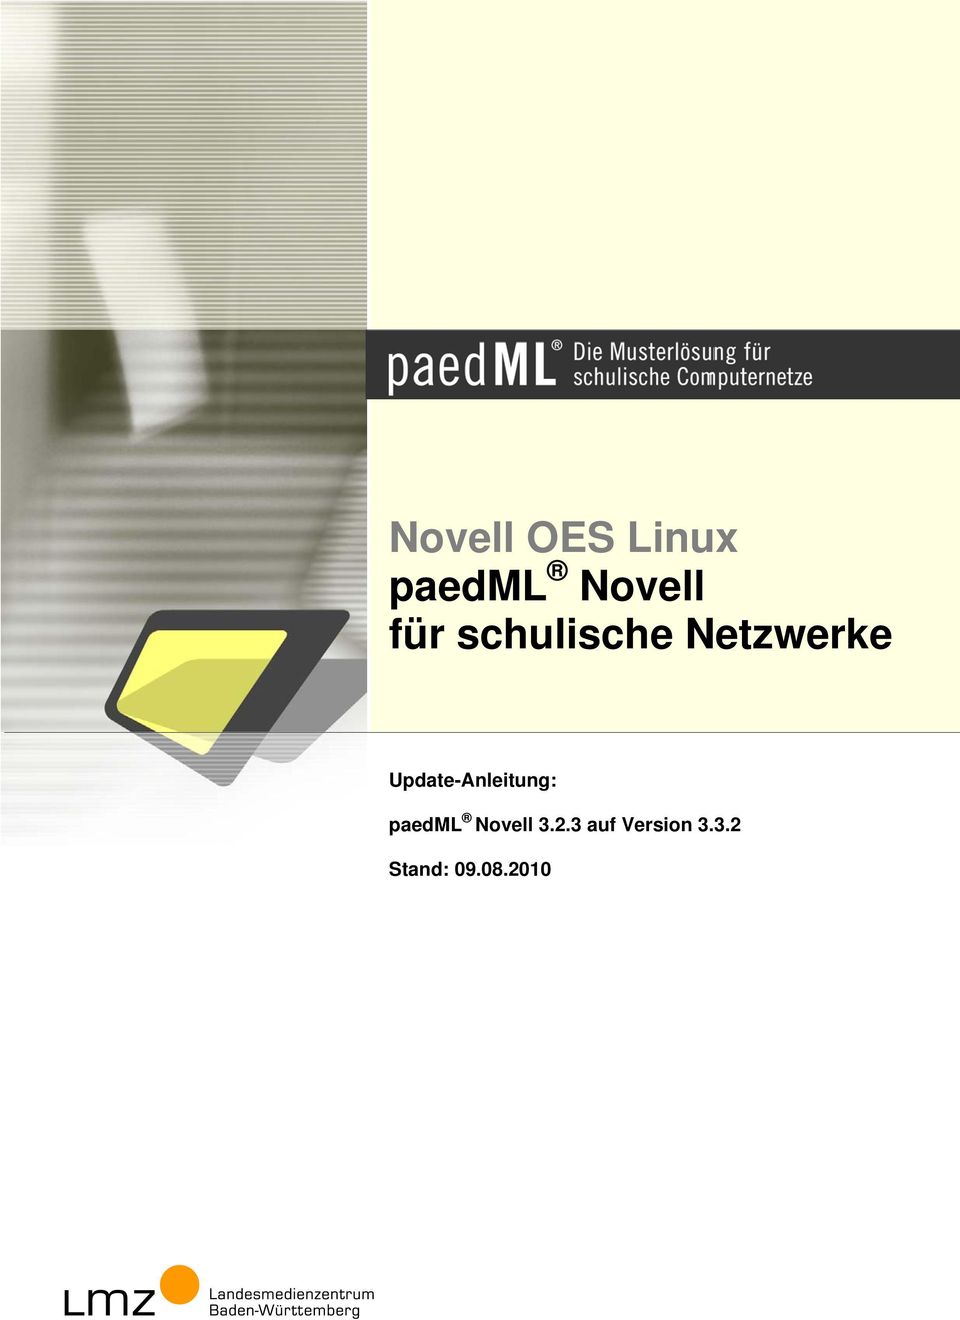 Update-Anleitung: paedml Novell